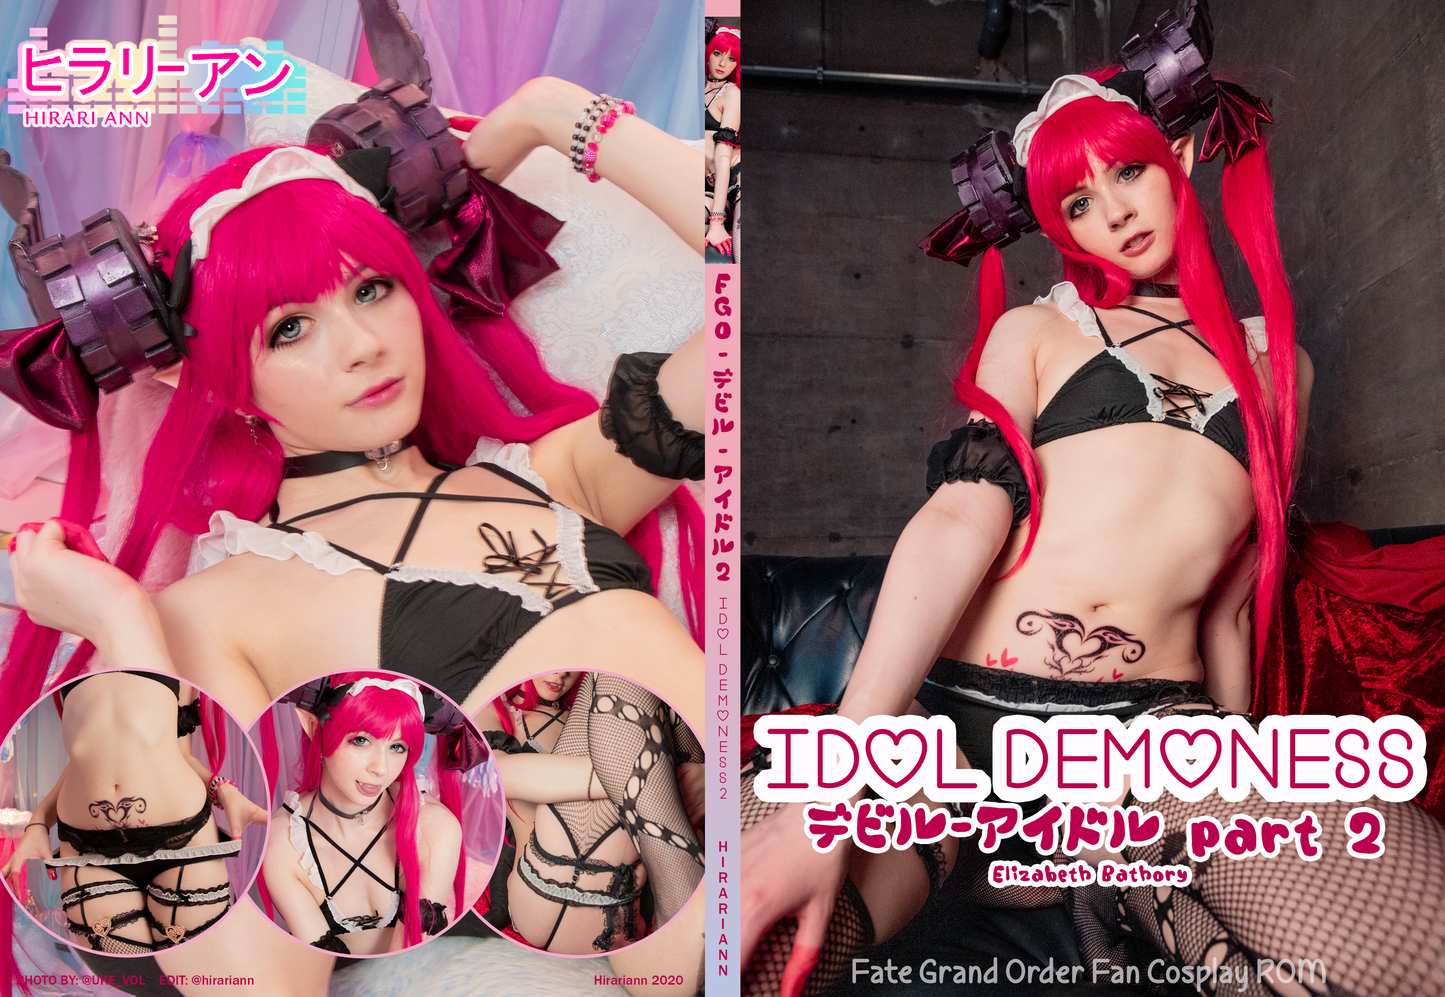 Idol Demoness 2 Elizabeth Bathory HD Digital Data